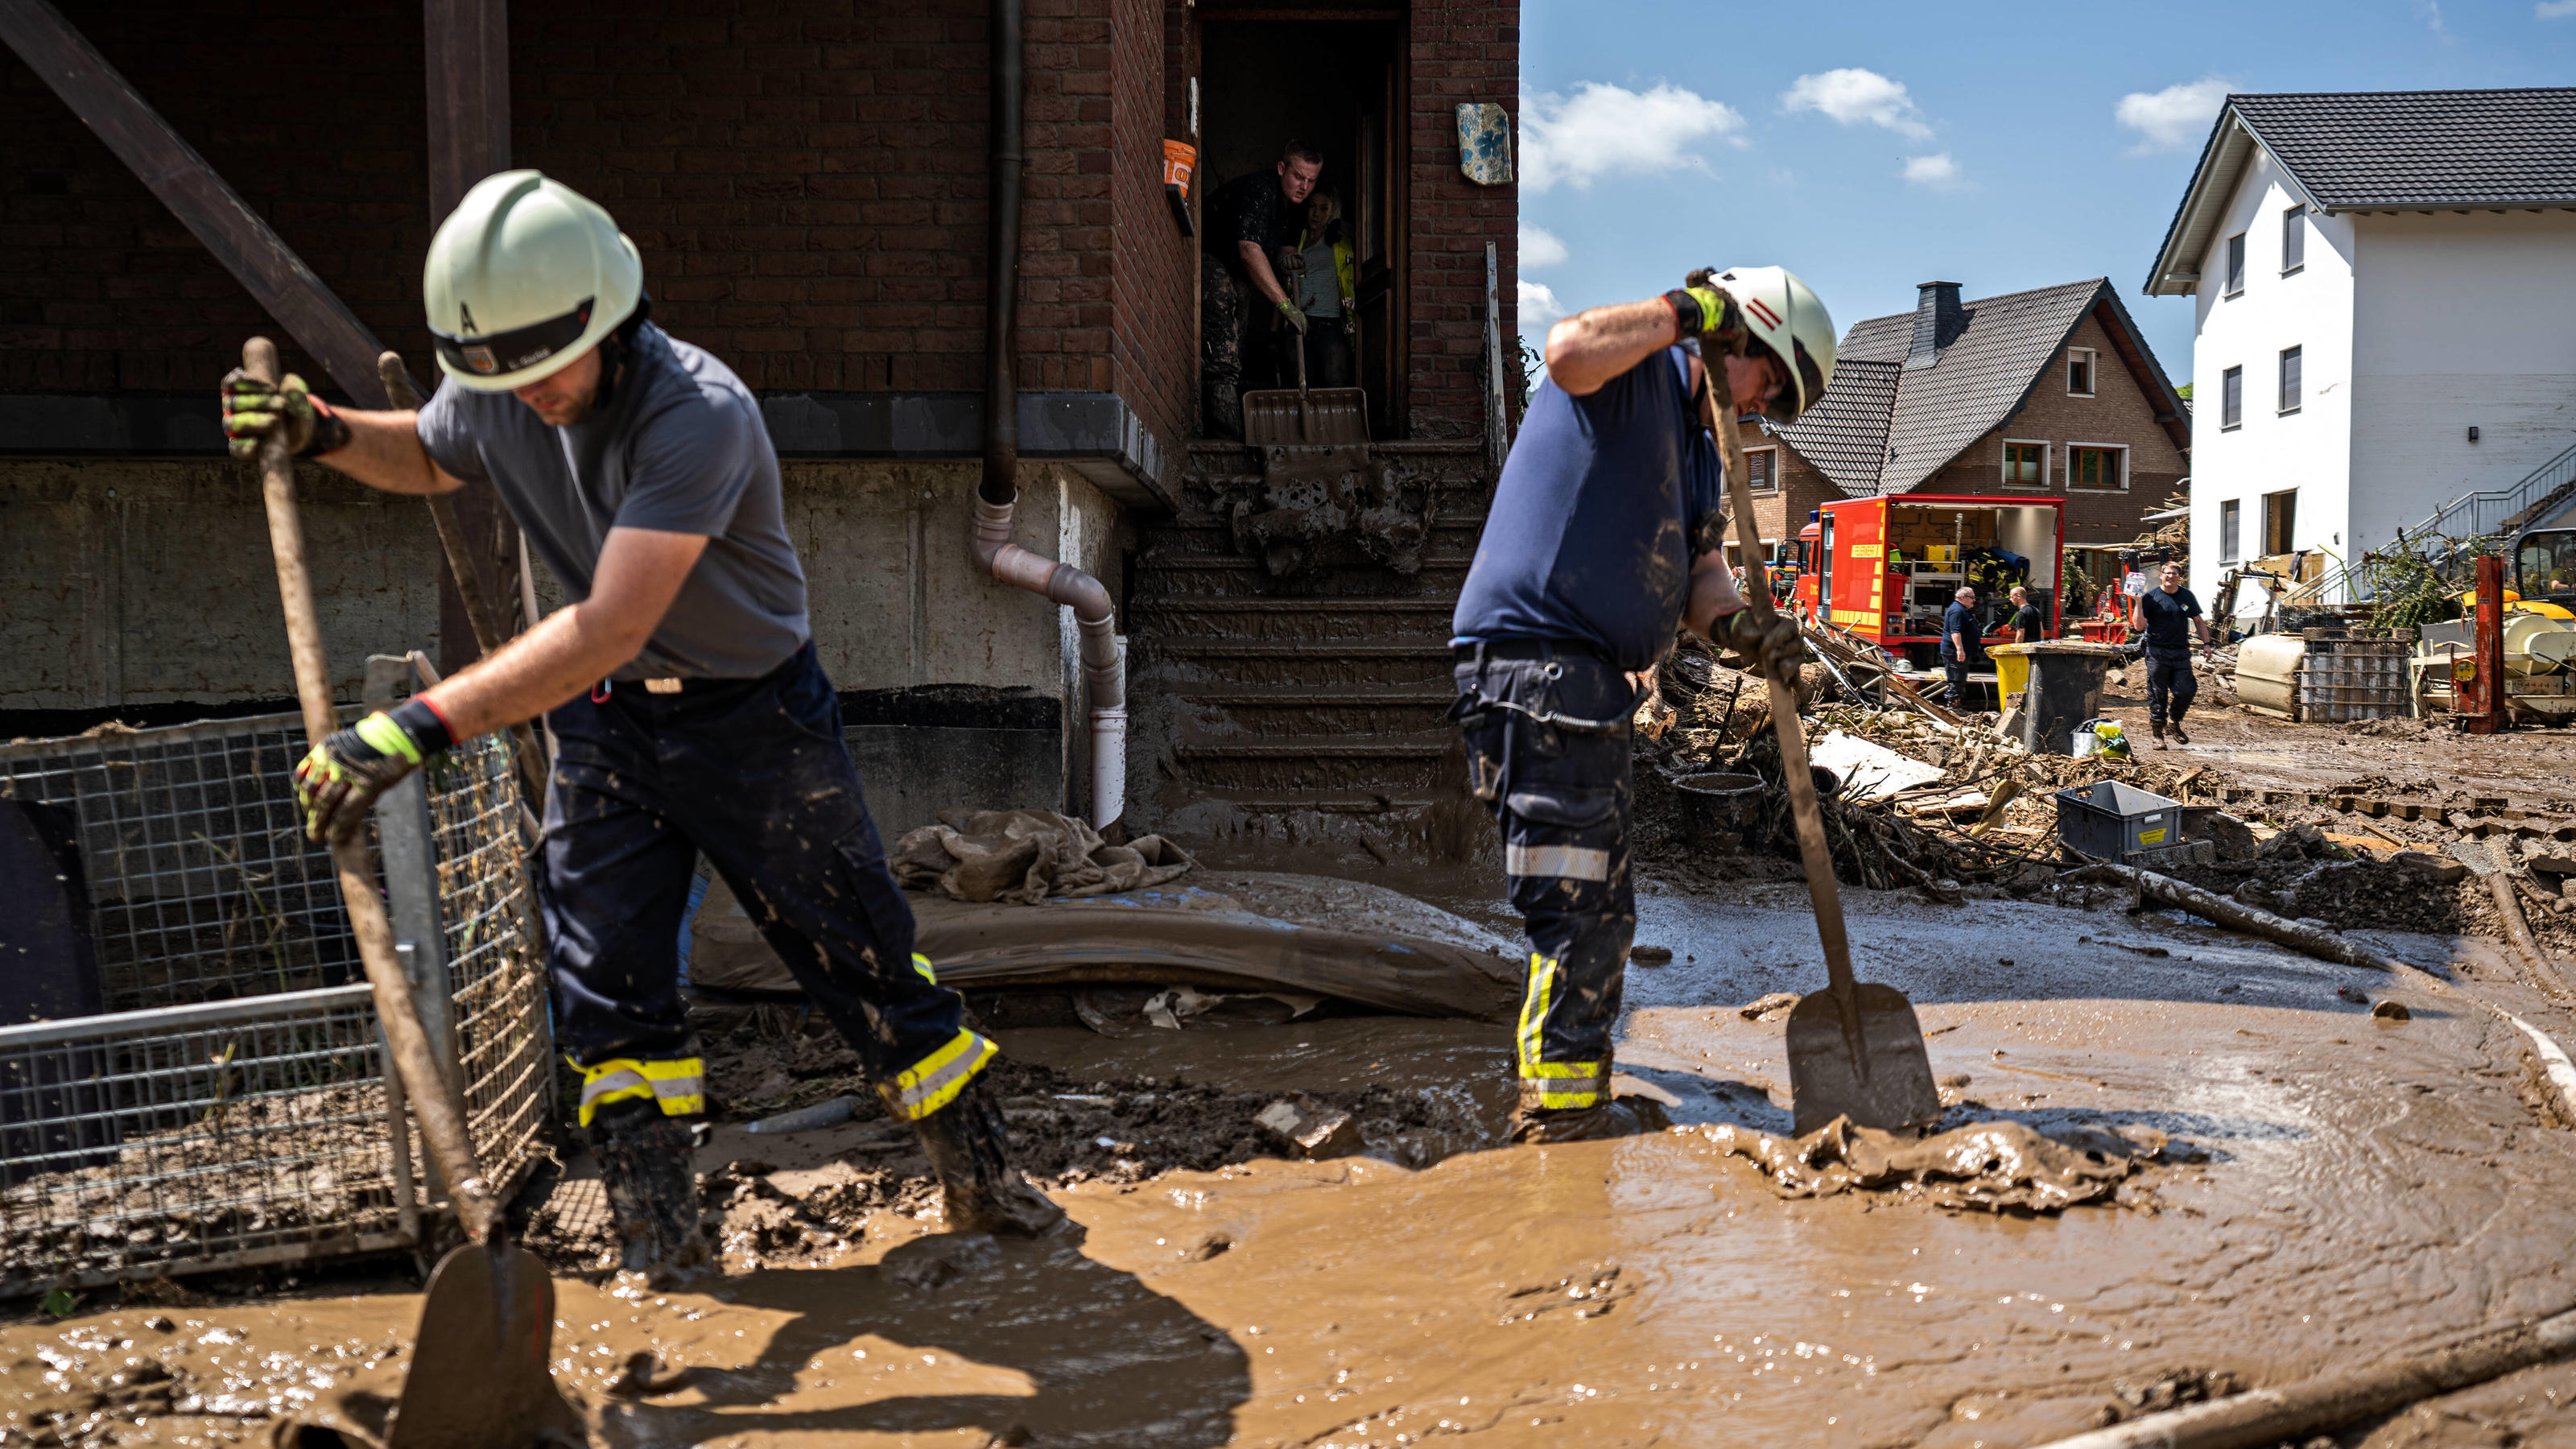  Aufräumarbeiten nach dem Hochwasser Bewohner und Feuerwehr tragen Schlamm in der Stadt Marienthal ab. Am 14.07.2021 kam es im Landkreis Ahrweiler zu starken Überflutungen durch Starkregen. Tage nach dem Hochwasser liefen Aufräumarbeiten an. Bundeswe